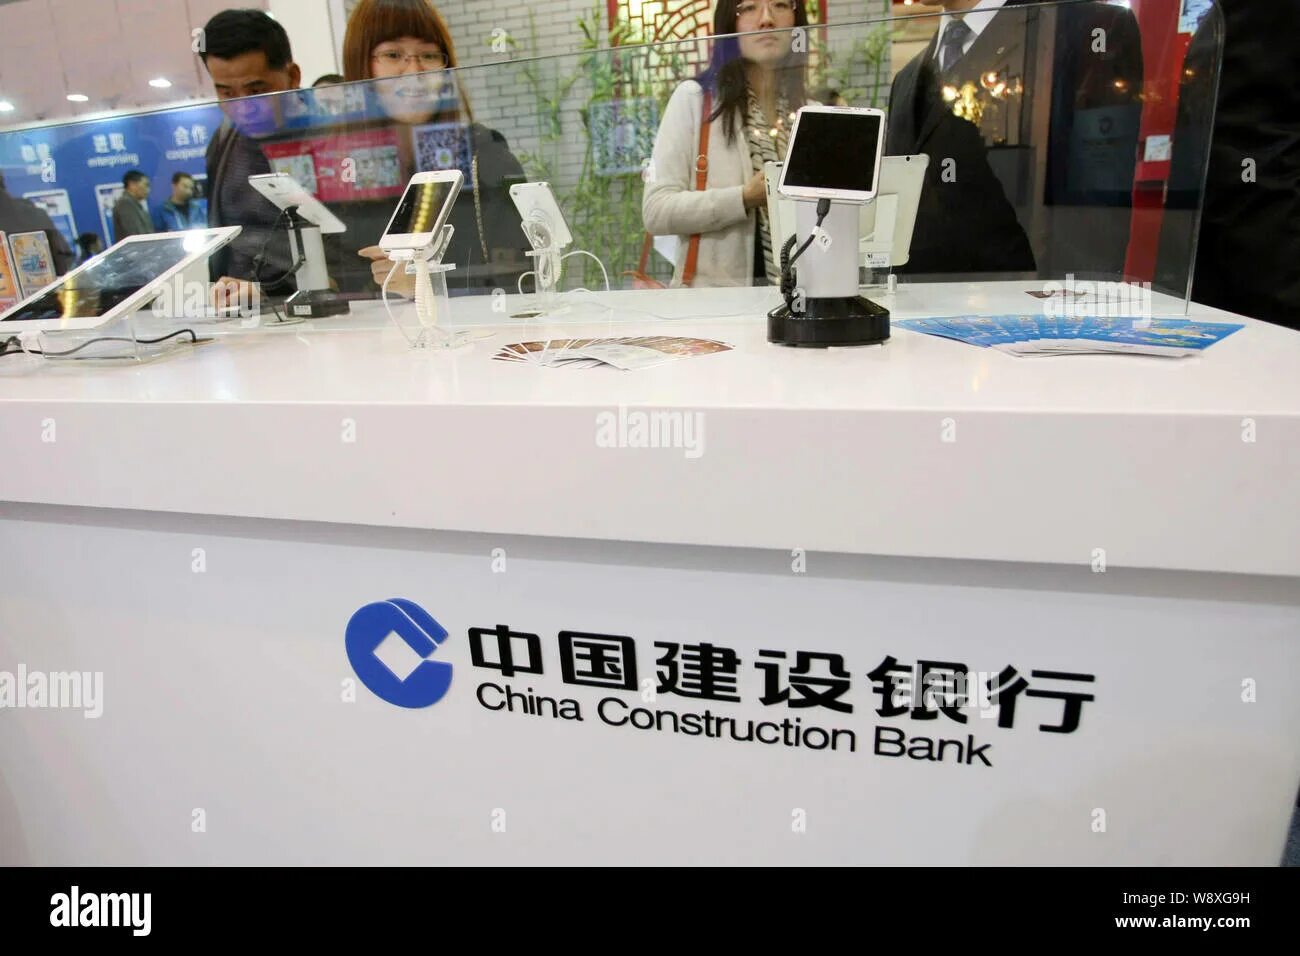 Китайский строительный банк. Чайна Констракшн банк. China Construction Bank (Китай). China Construction Bank штаб.